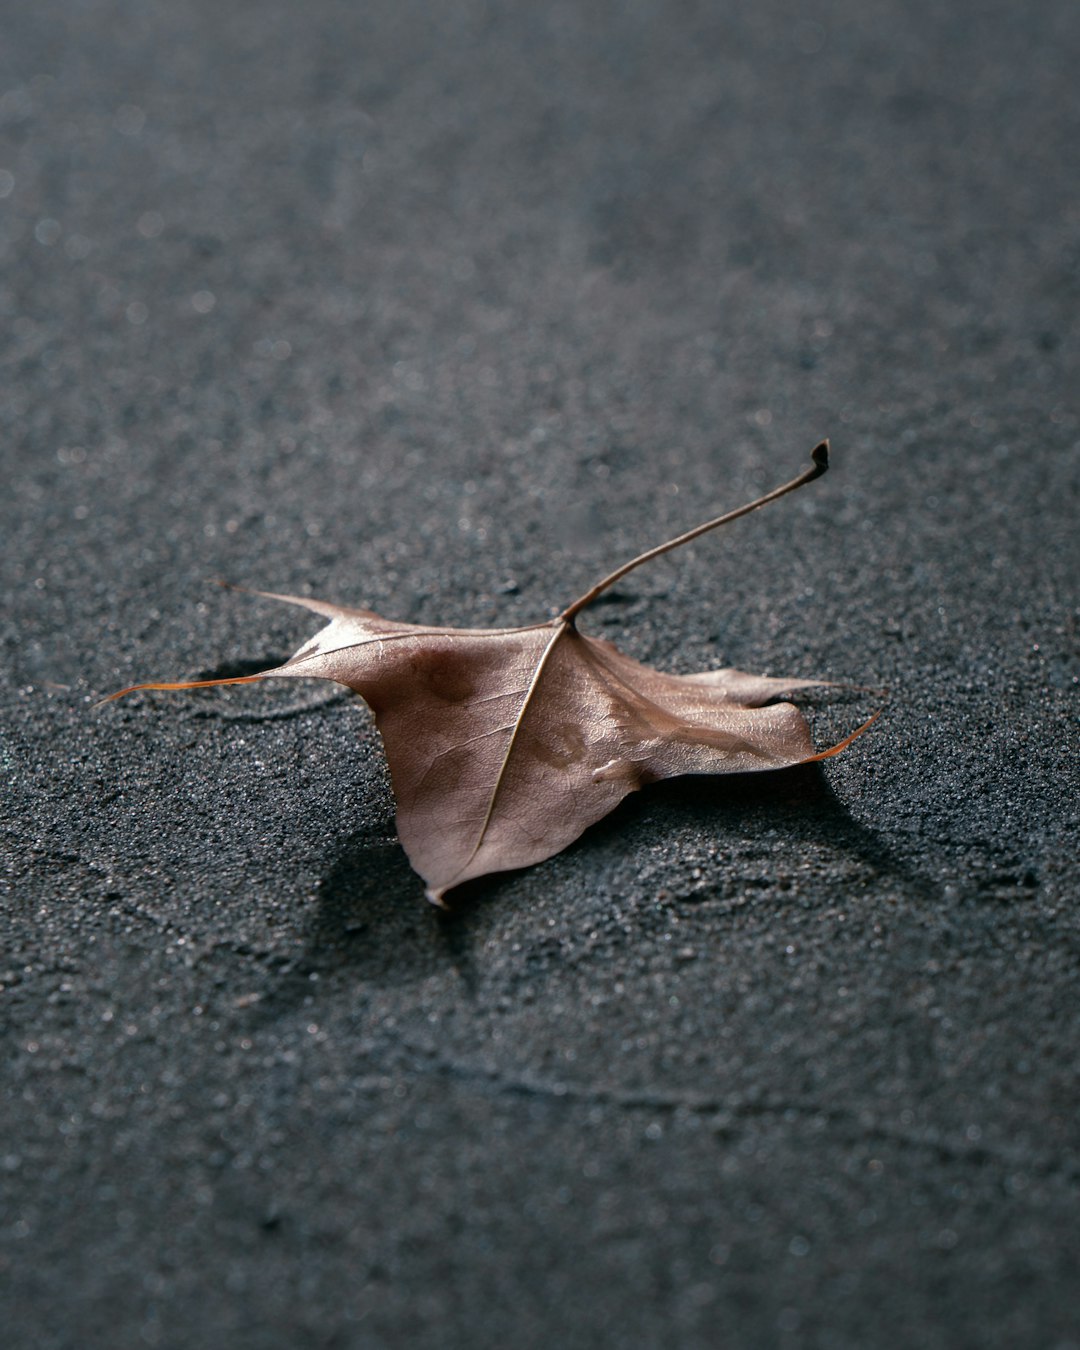 brown dried leaf on black concrete floor